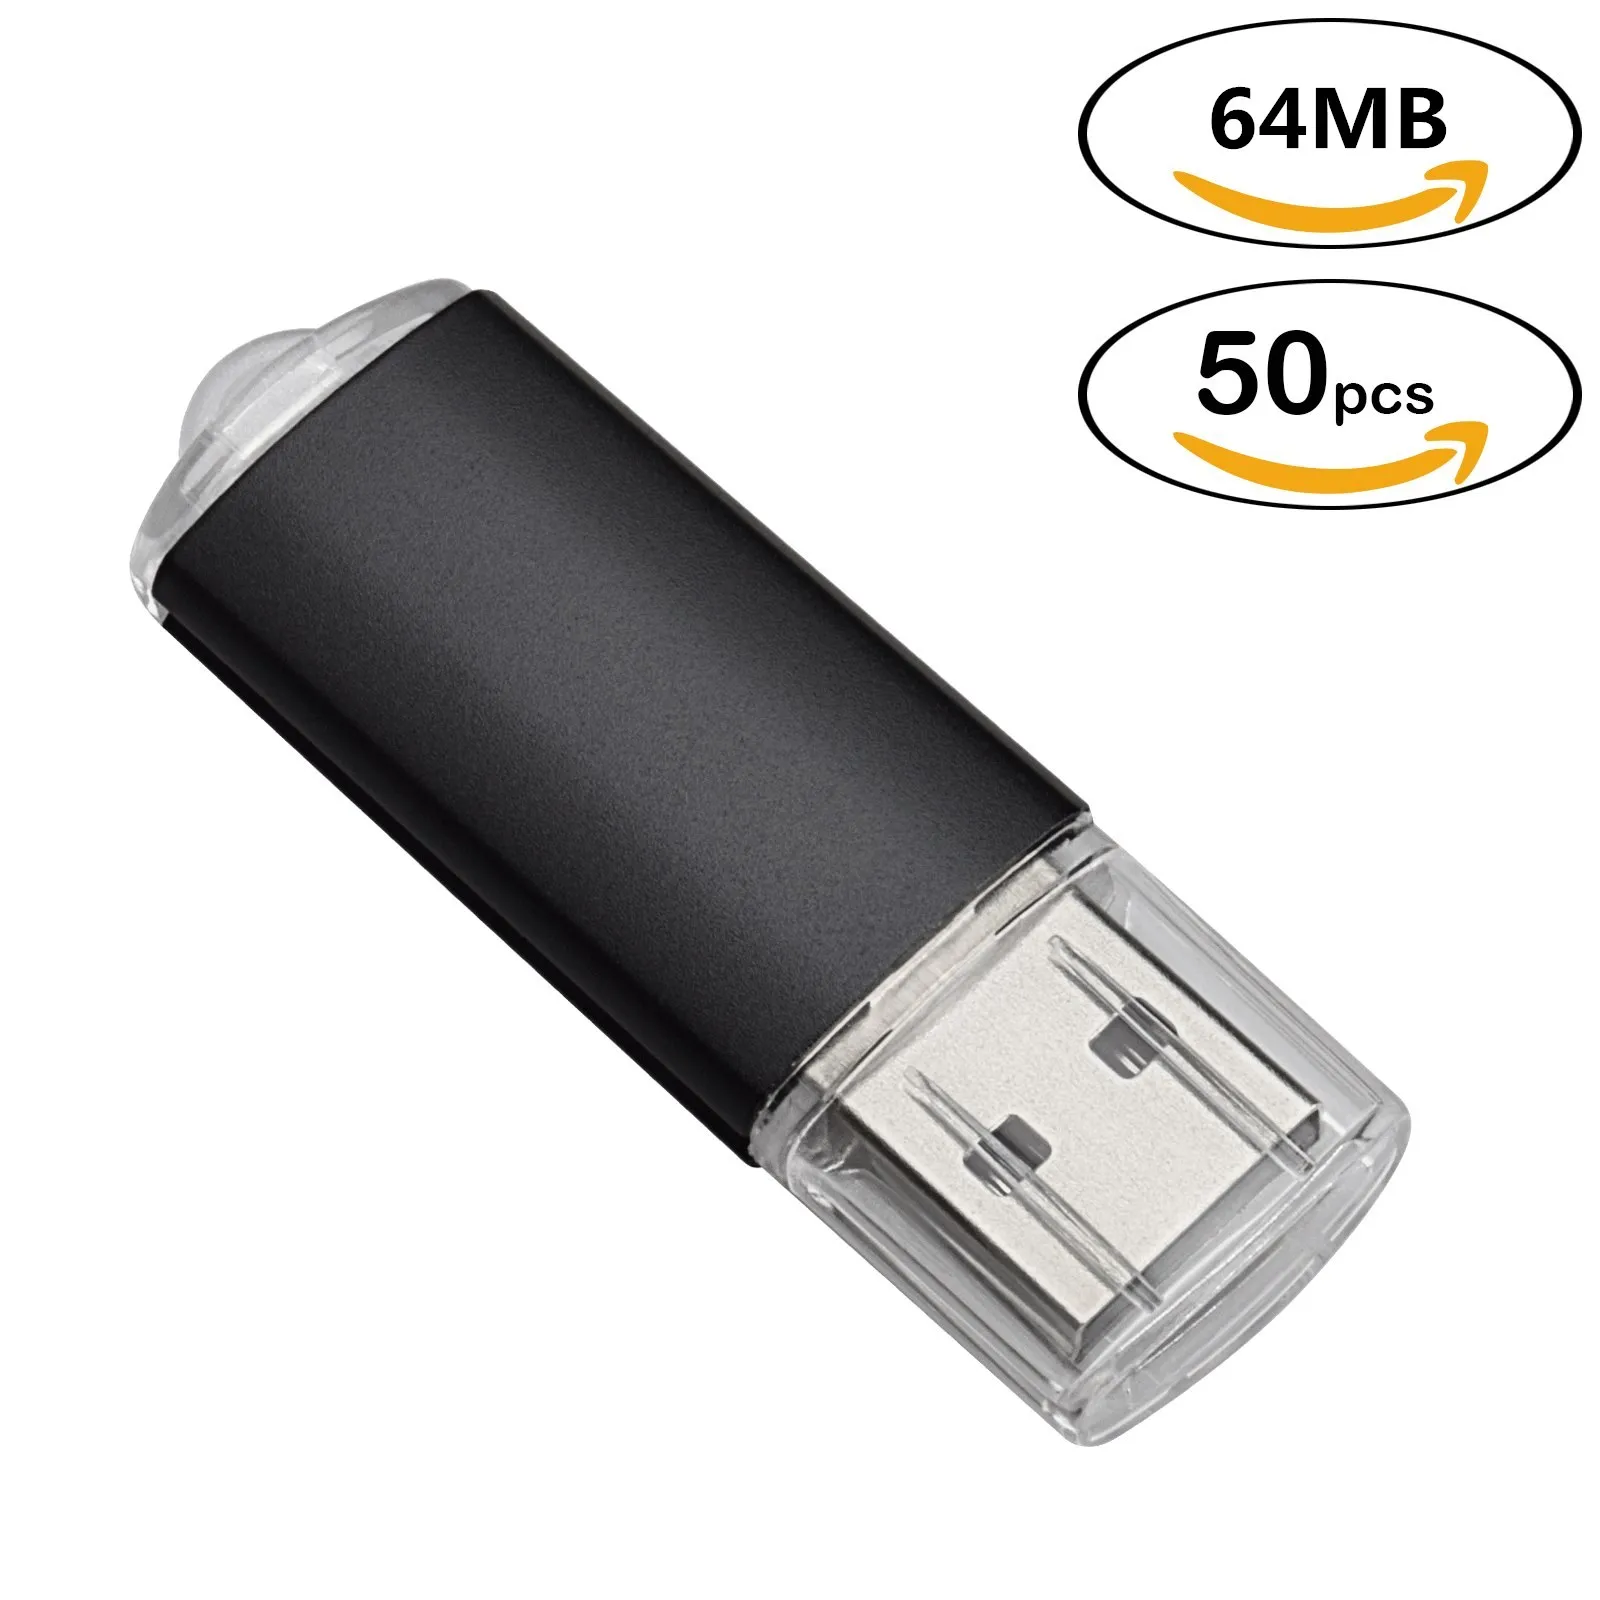 Frete Grátis 50 pcs Gravado Personalizar Nome 64 MB USB 2.0 Flash Drive Impresso logotipo Personalizado Memory Stick para Computador Macbook Pen Drive